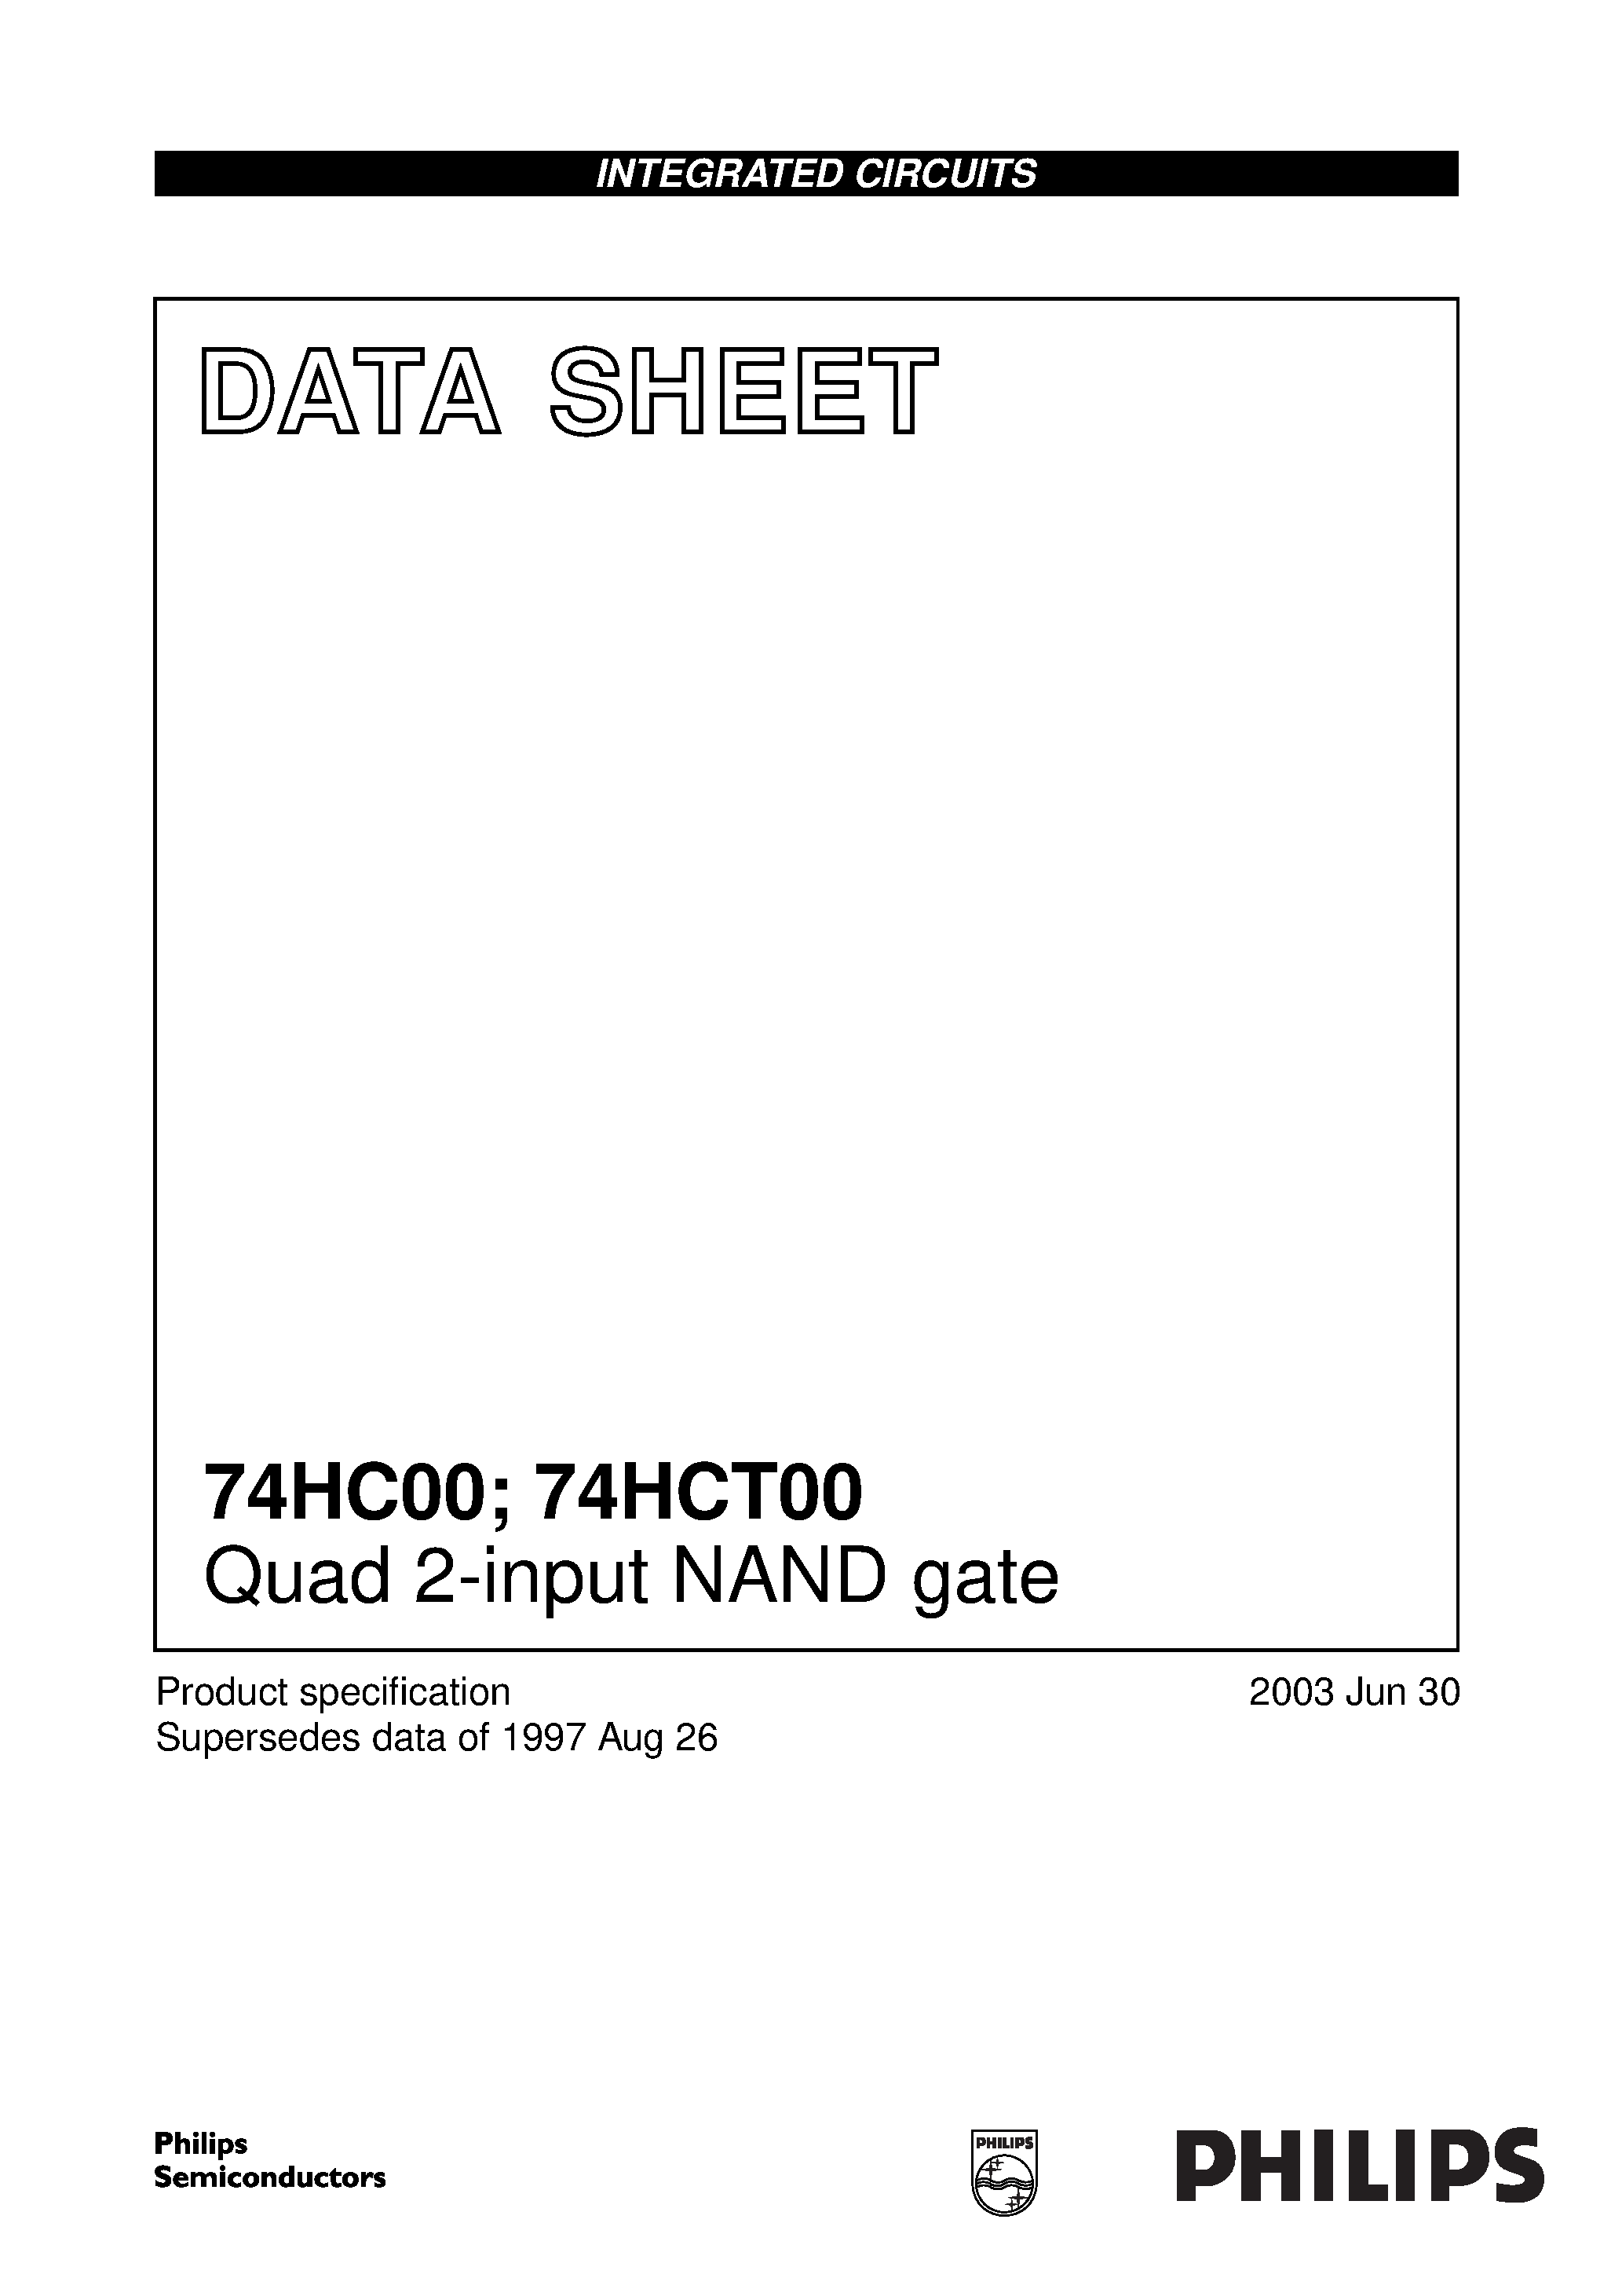 Даташит 74HCT00D - Quad 2-input NAND gate страница 1